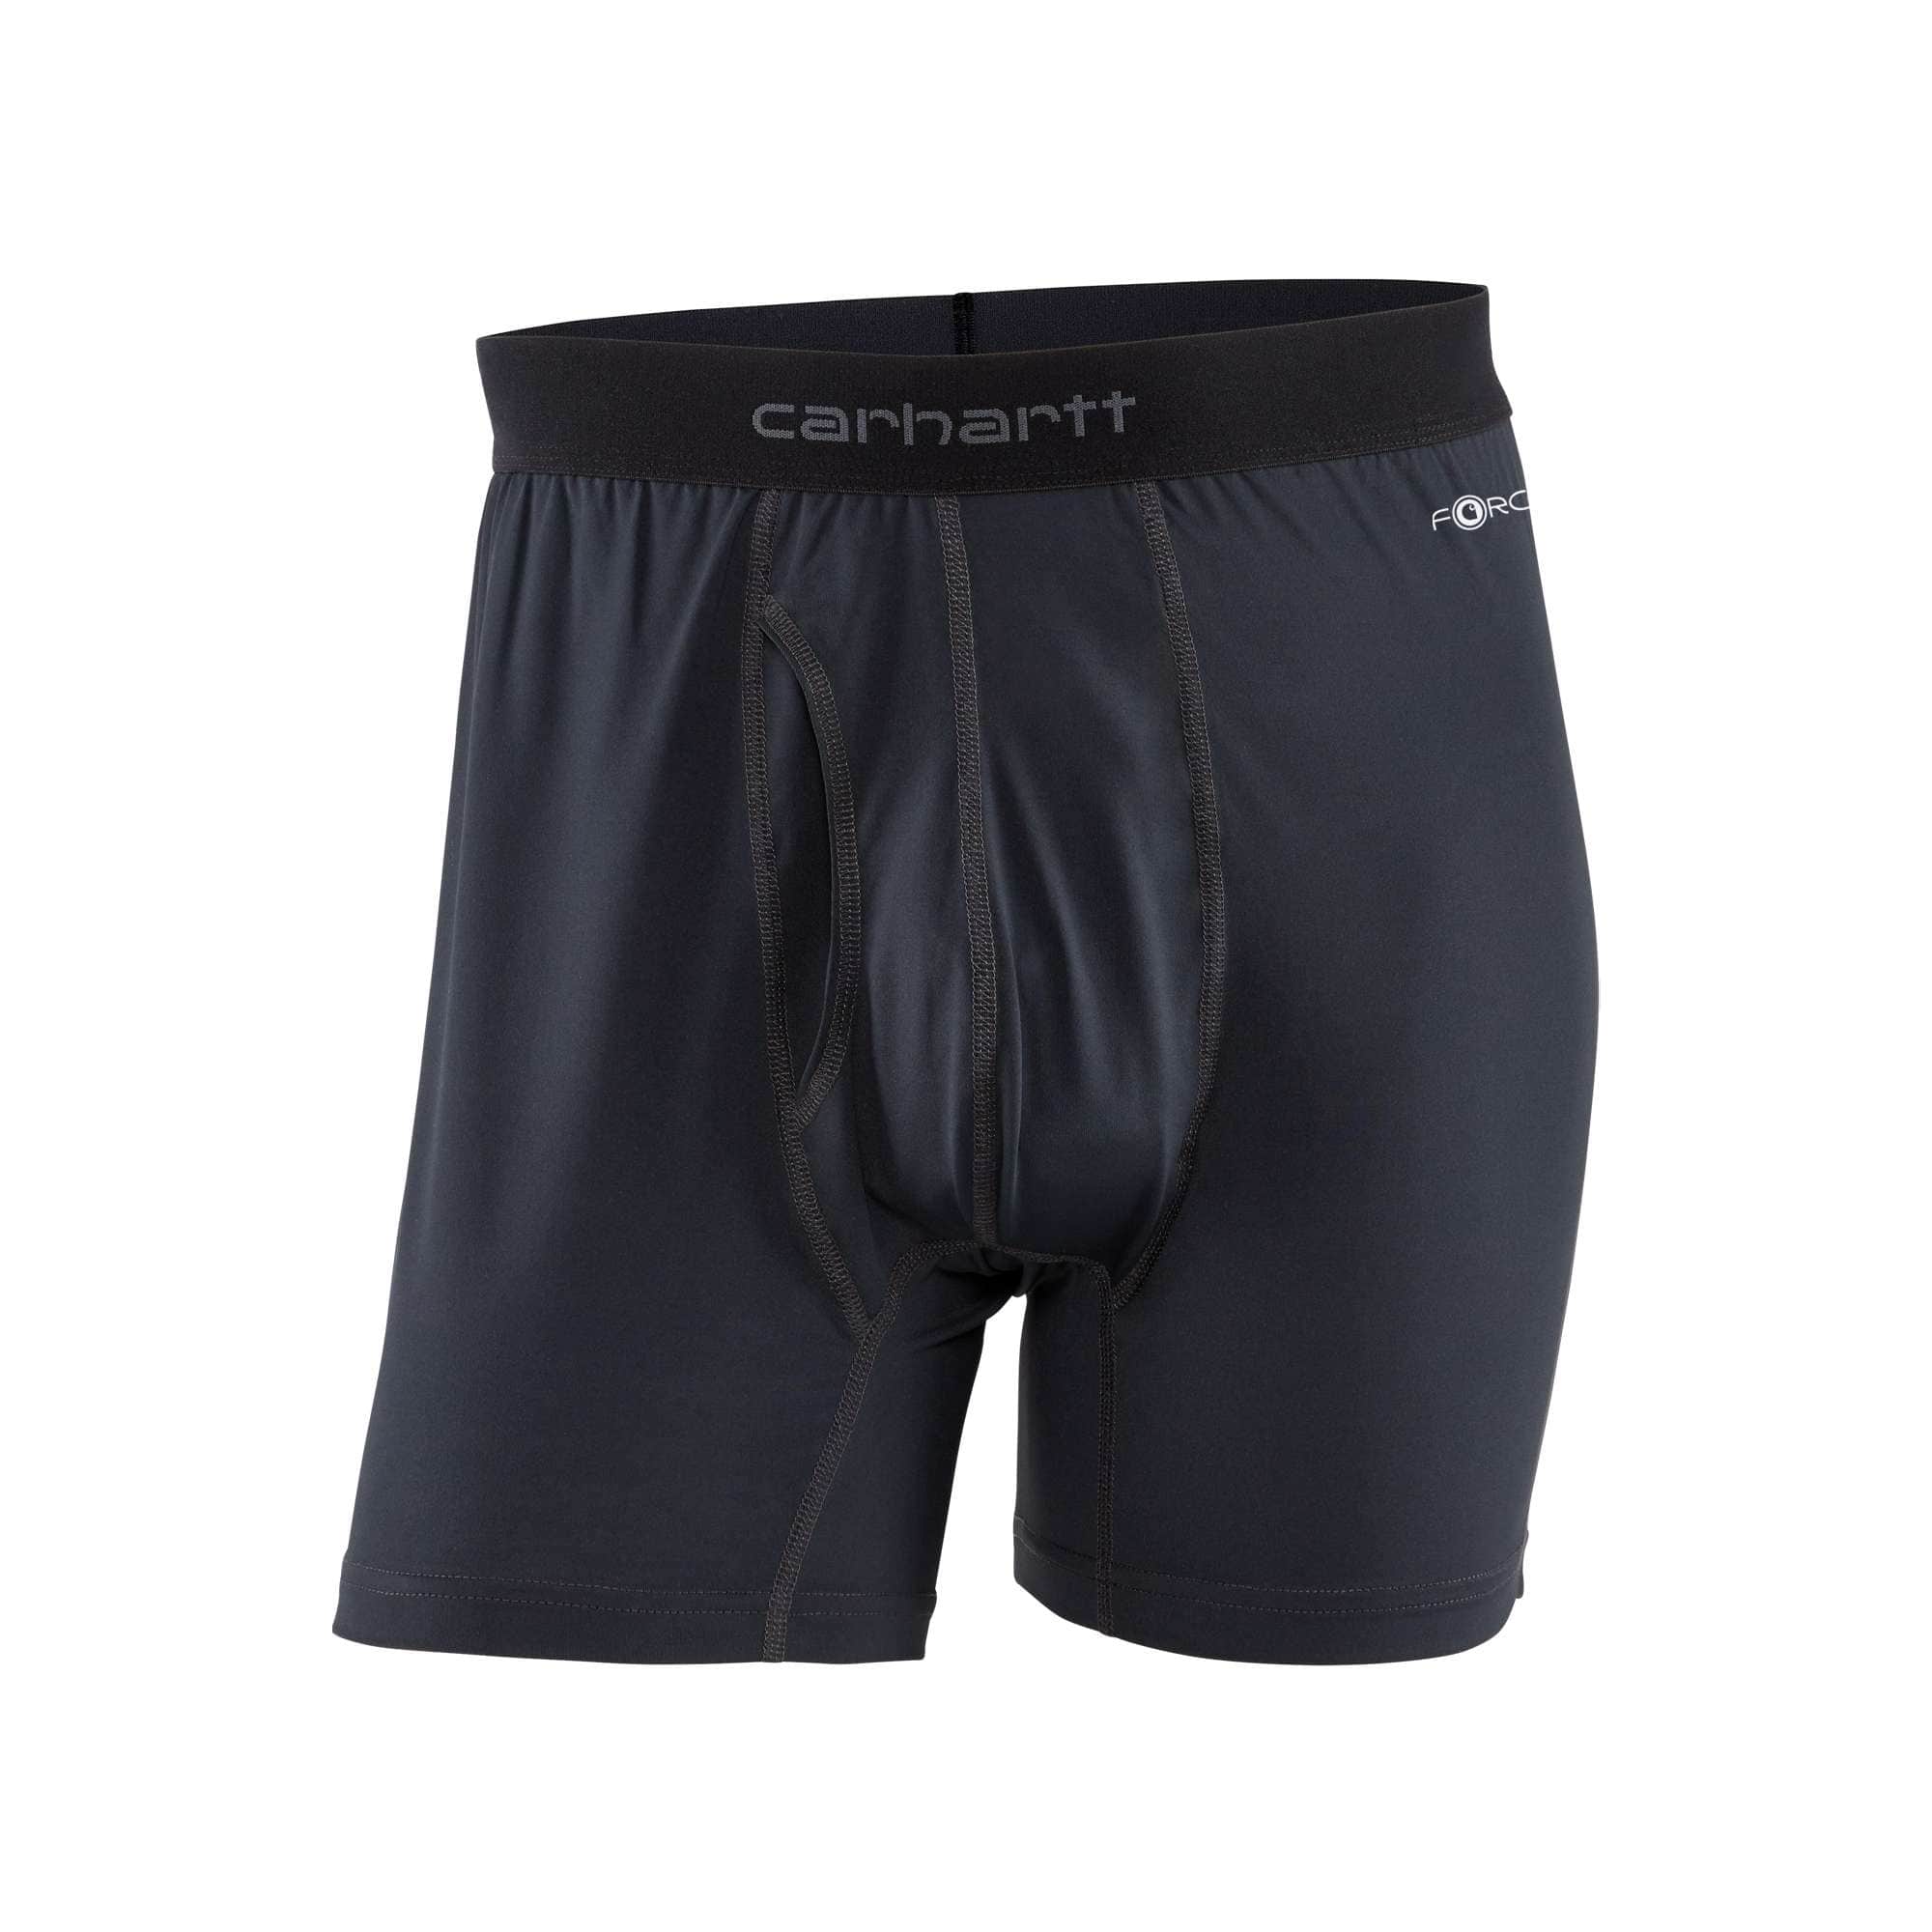 Carhartt Thermal Underwear Men's 4XLarge 100% Cotton Bottoms 2